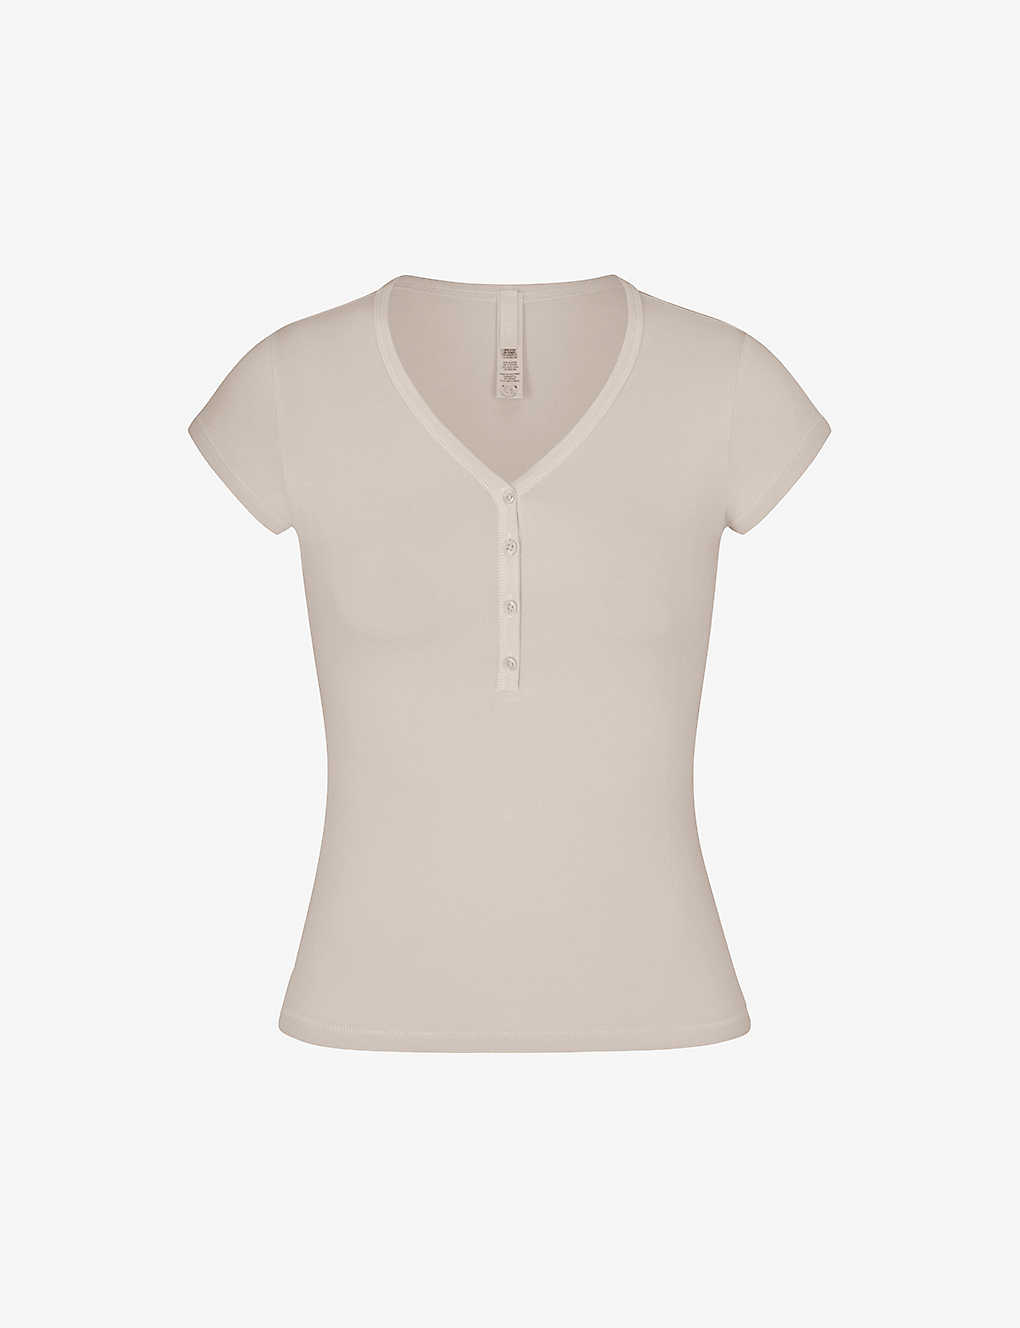 Skims Womens Stone New Vintage V-neck Stretch-cotton T-shirt